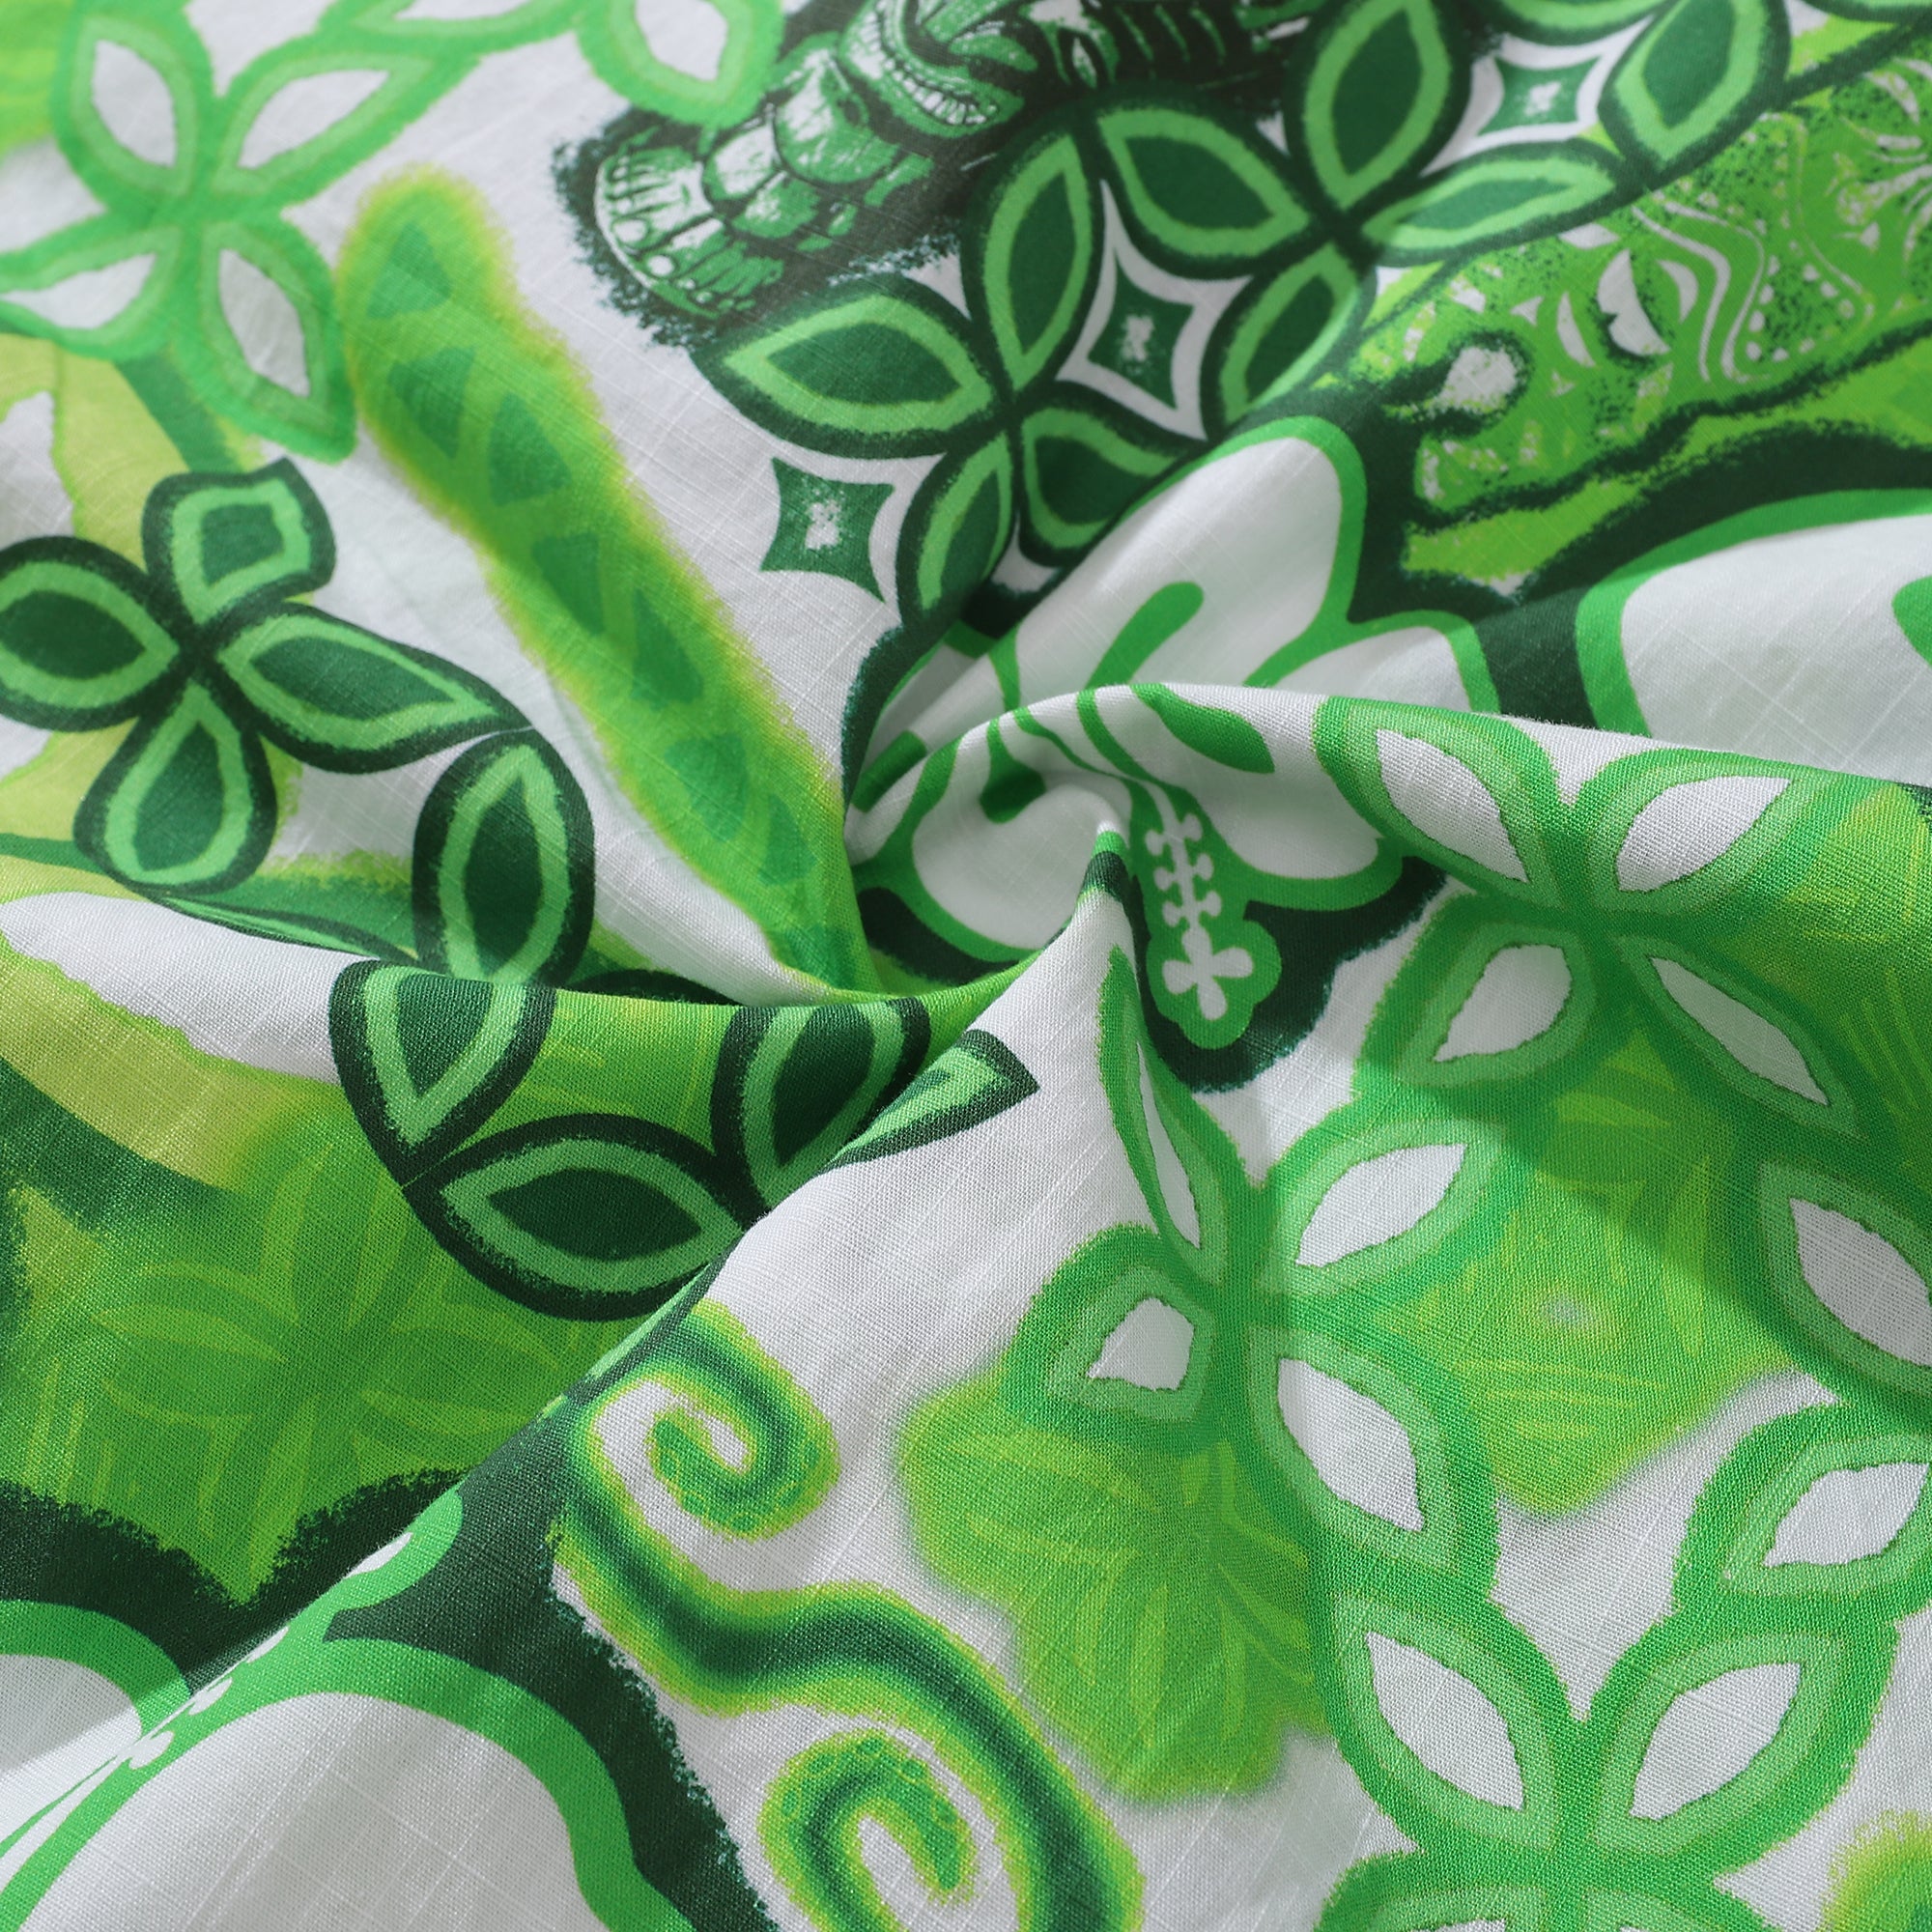 Camisas hawaianas para hombre Tikirob Camisa de diseñador Totem 100% algodón - Verde